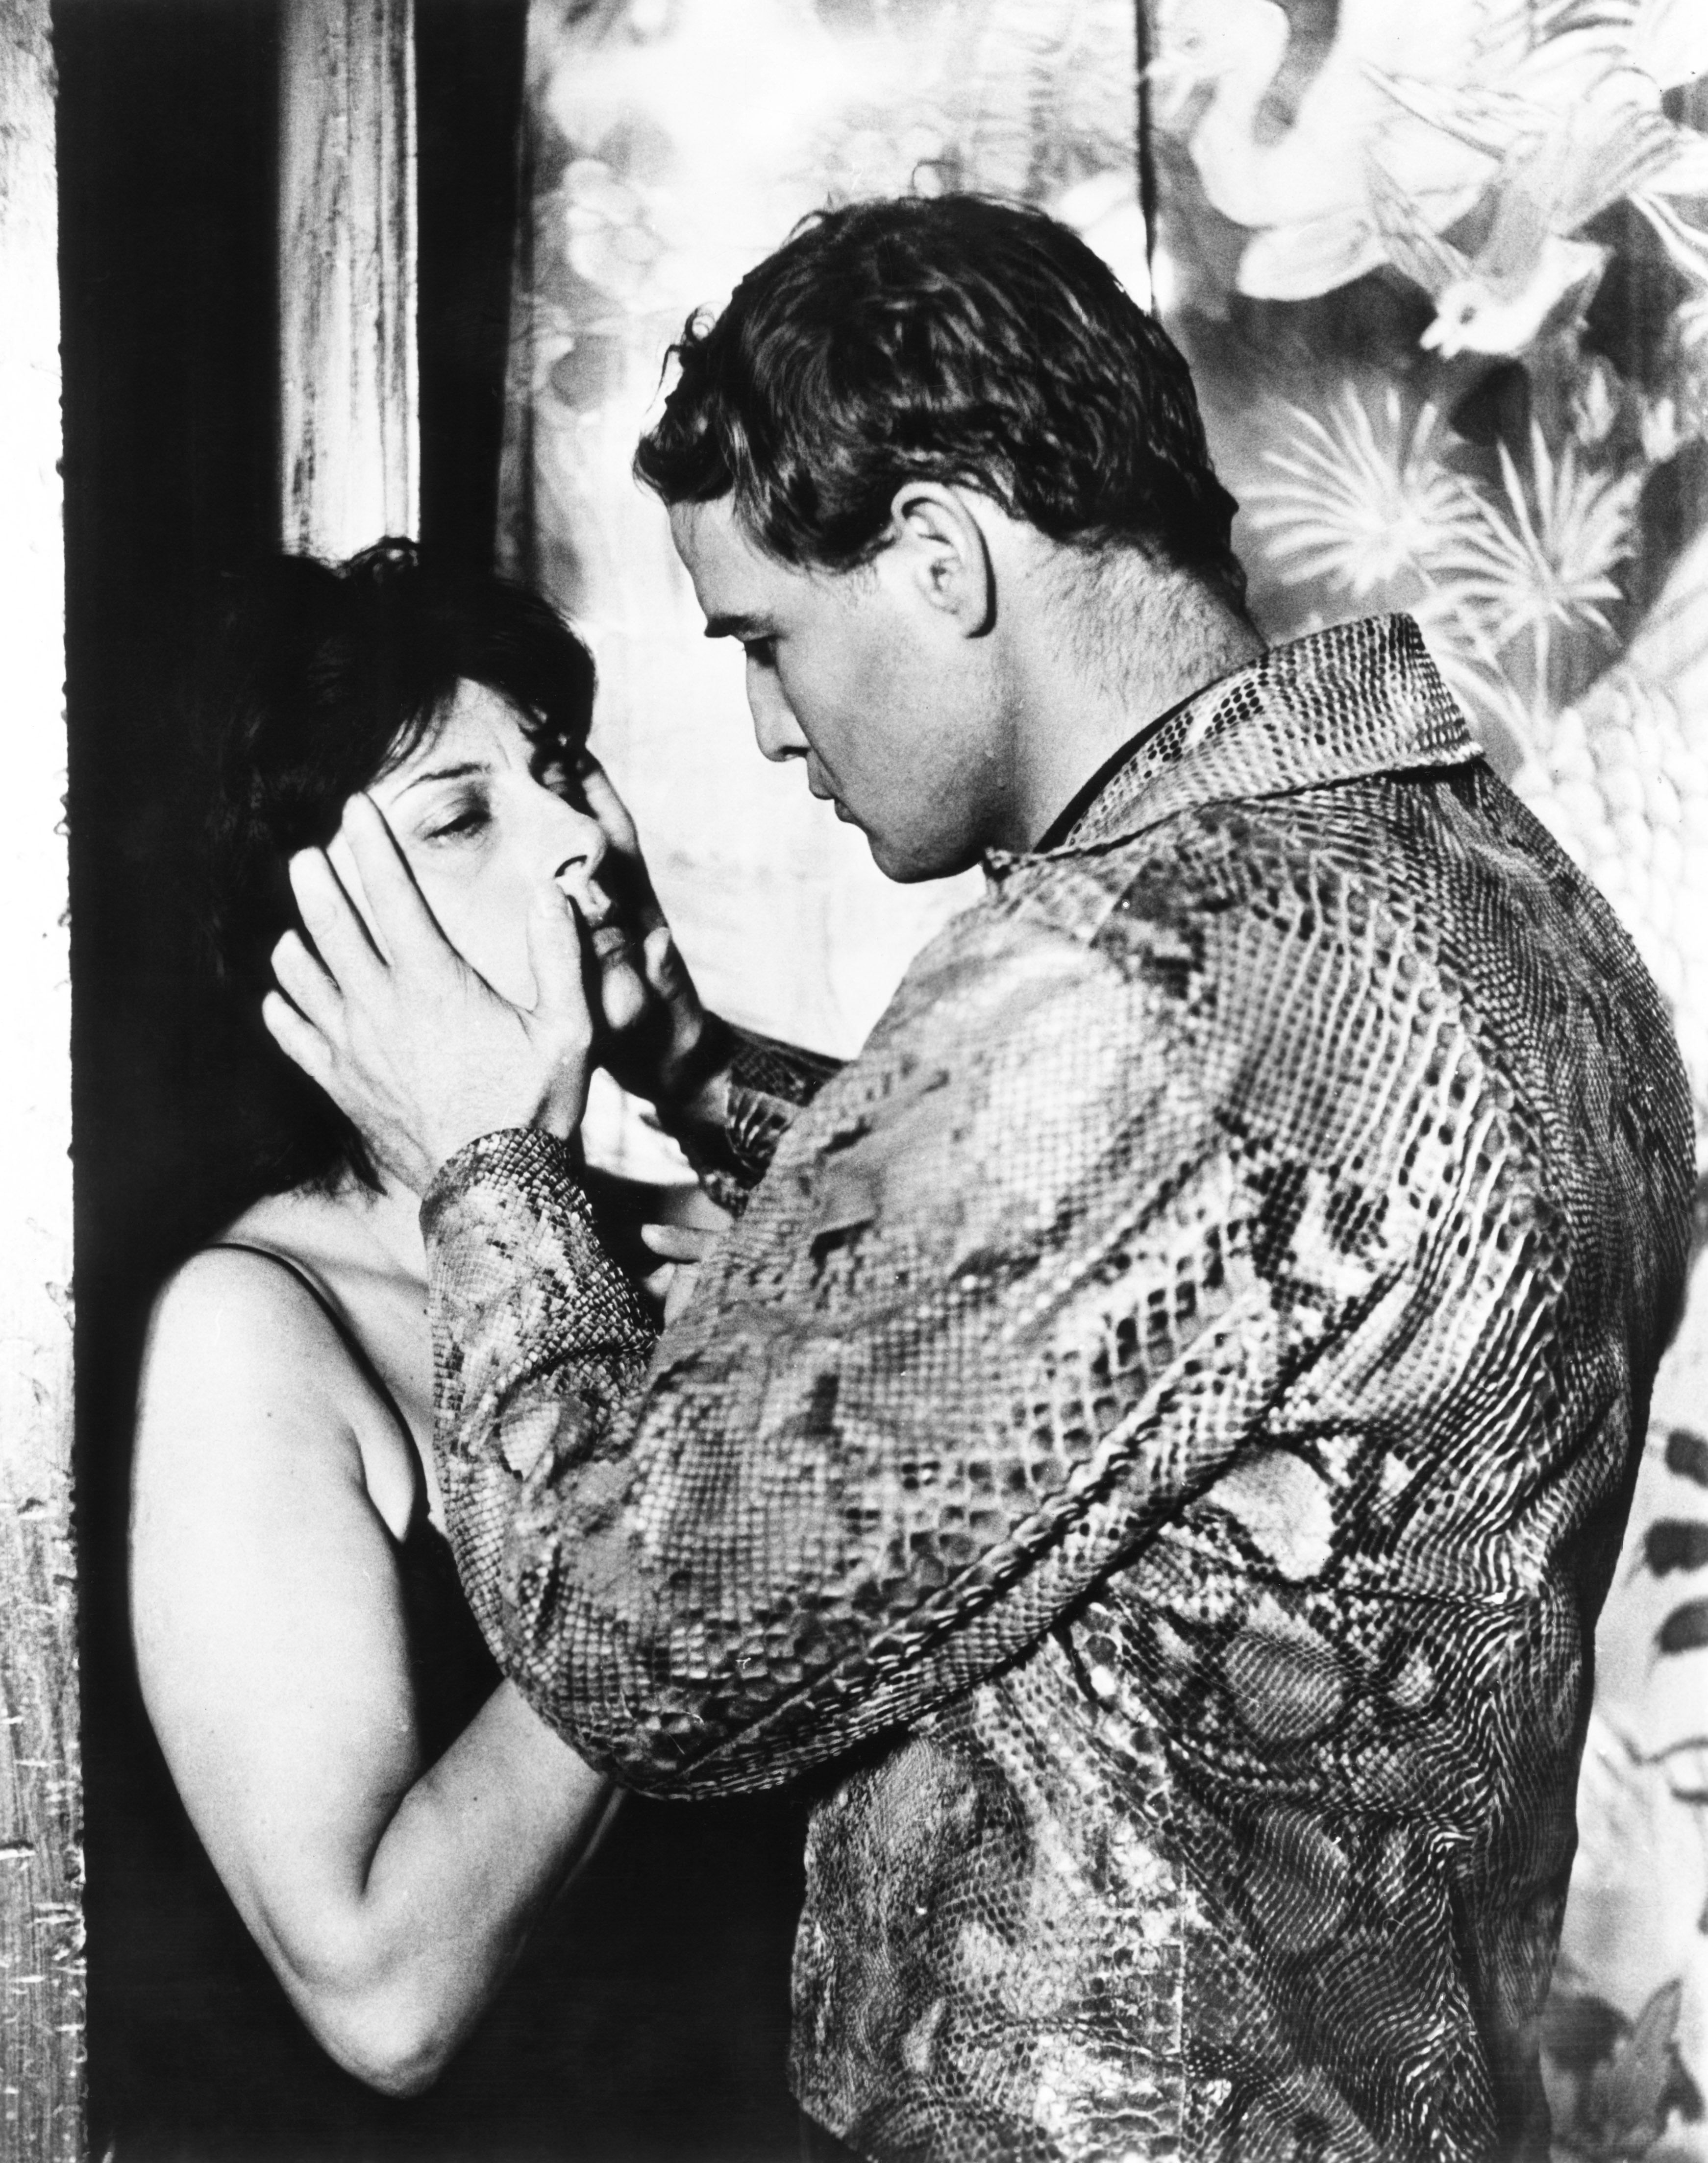 Pelle di serpente con Marlon Brando 1959